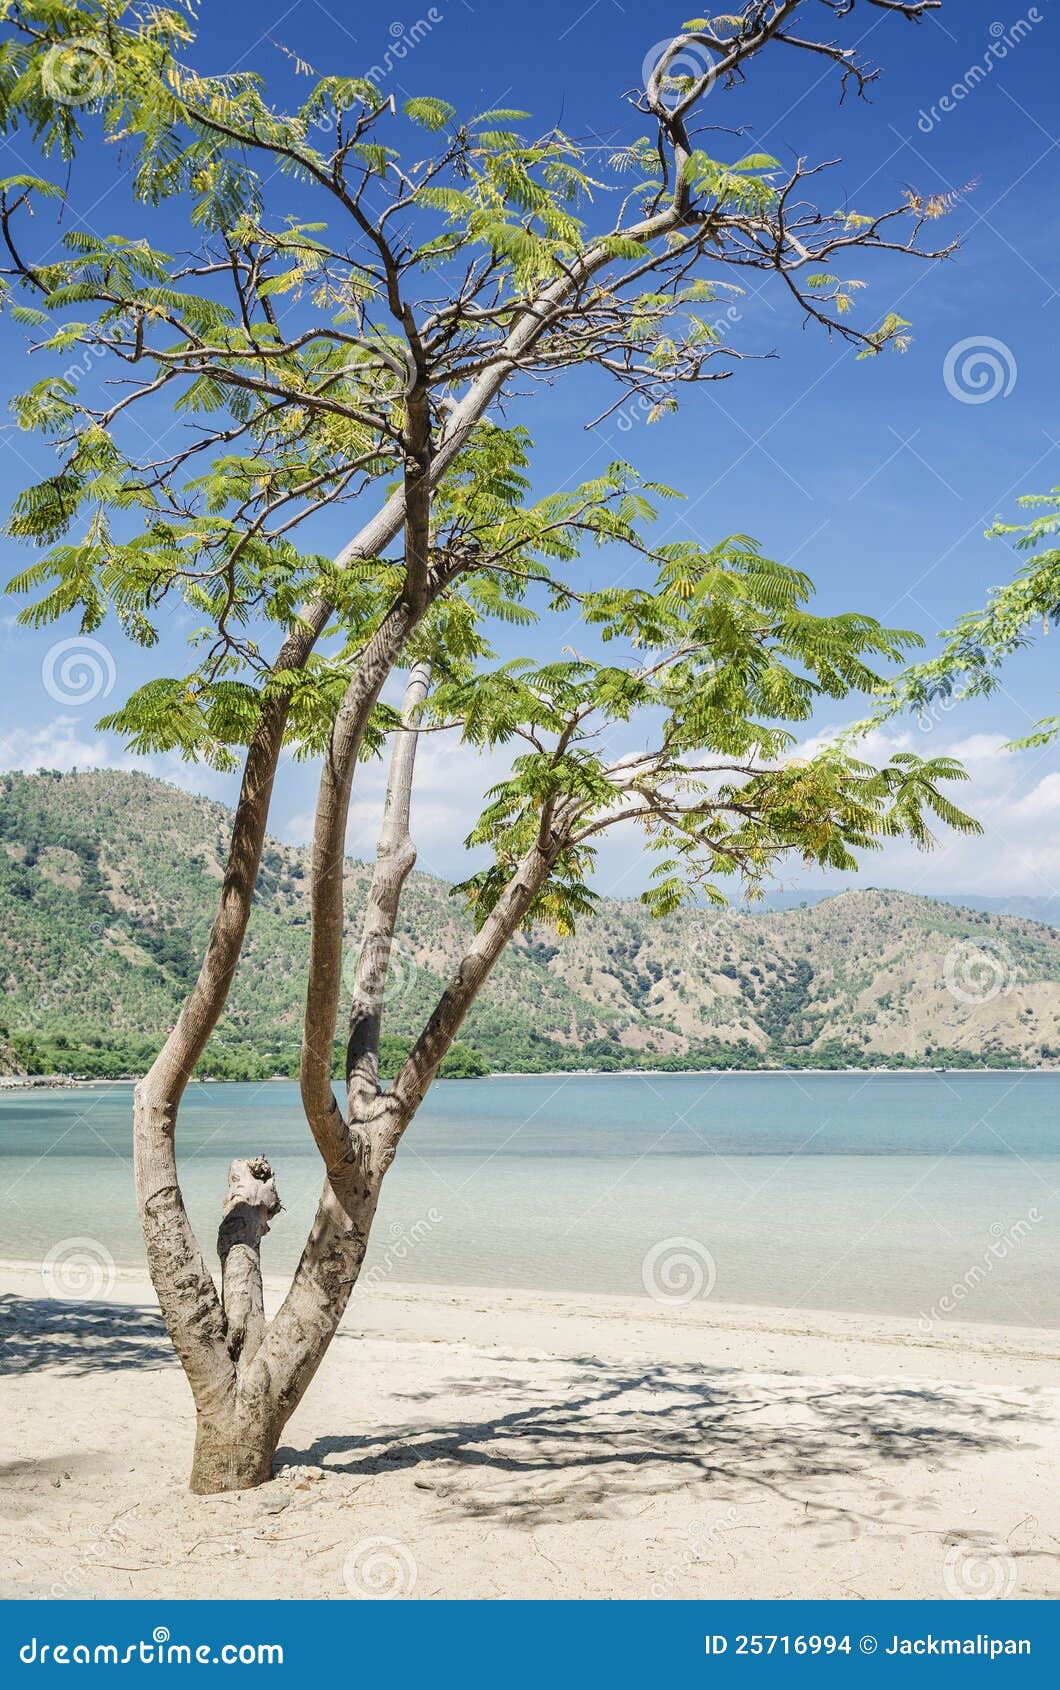 areia branca beach near dili east timor